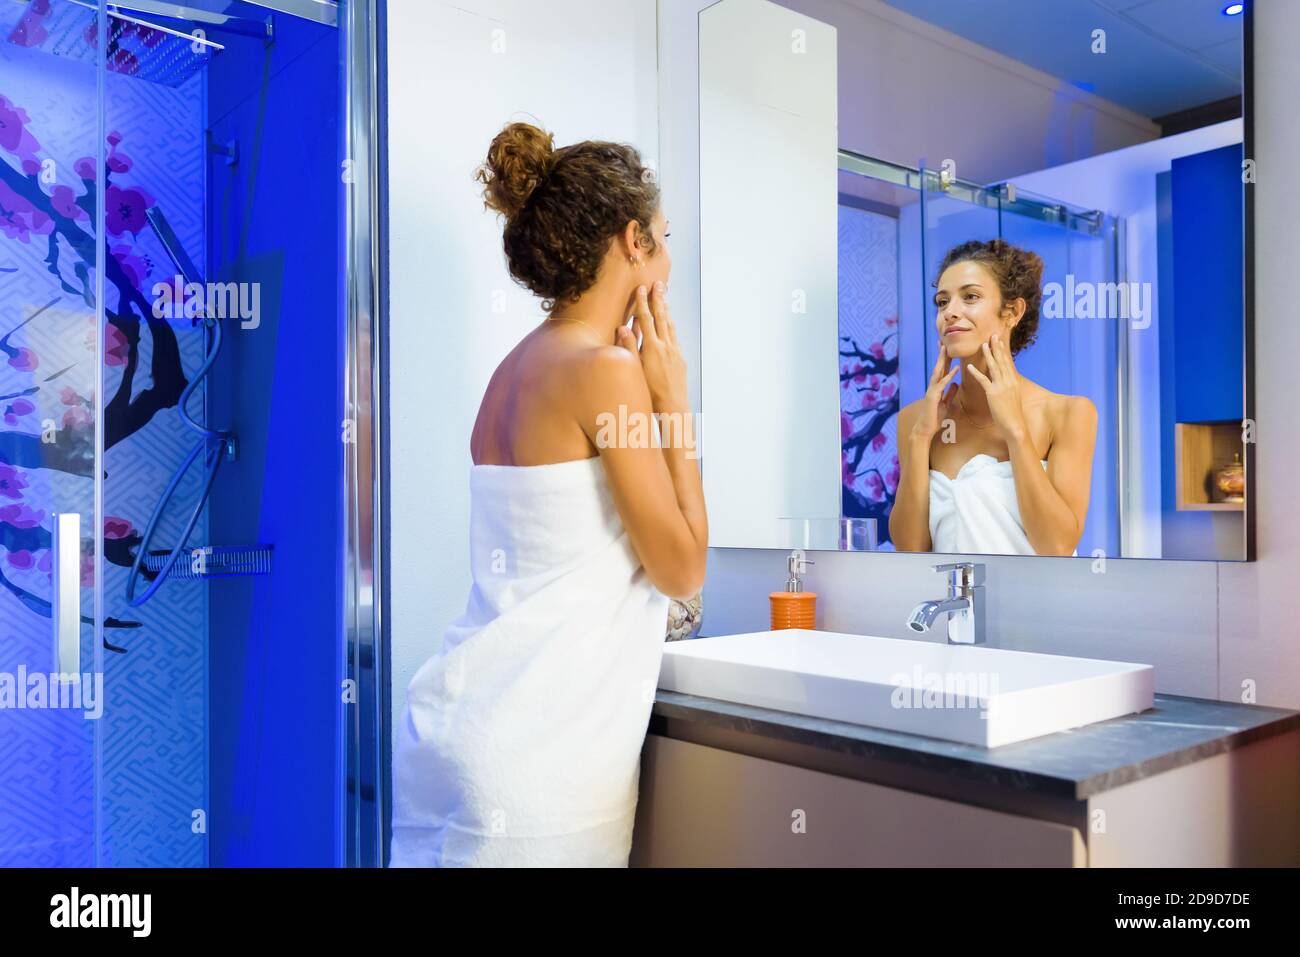 Erfrischte junge Frau in einem sauberen weißen Handtuch suchen gewickelt Bei sich selbst in einem Badezimmerspiegel nach dem Duschen in einem Hygiene- oder Schönheitskonzept Stockfoto